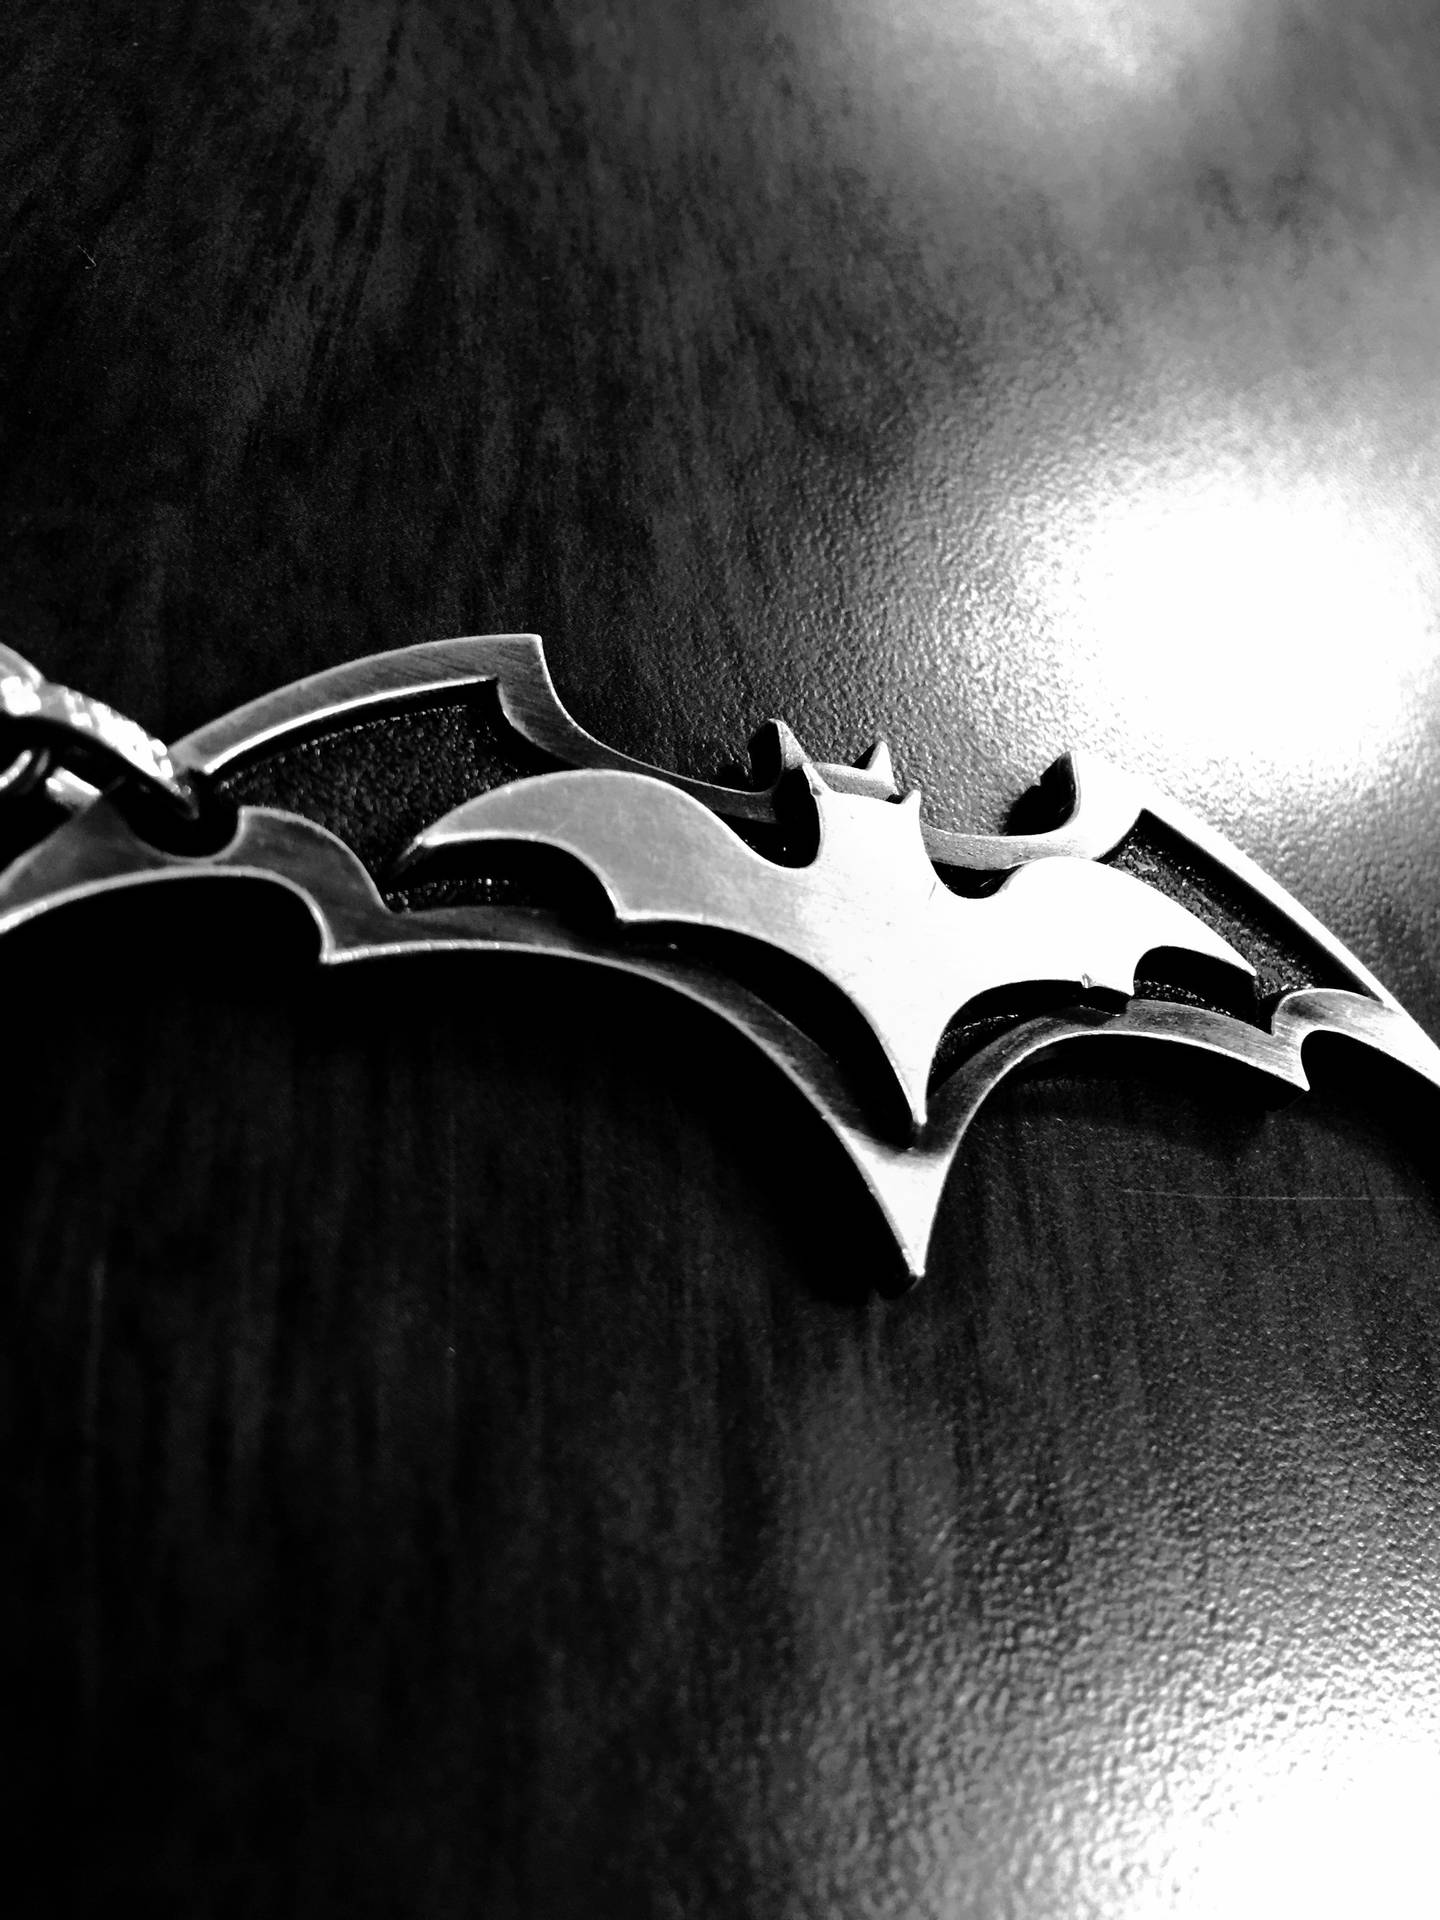 Download 3d Metal Batman Logo Iphone Wallpaper 